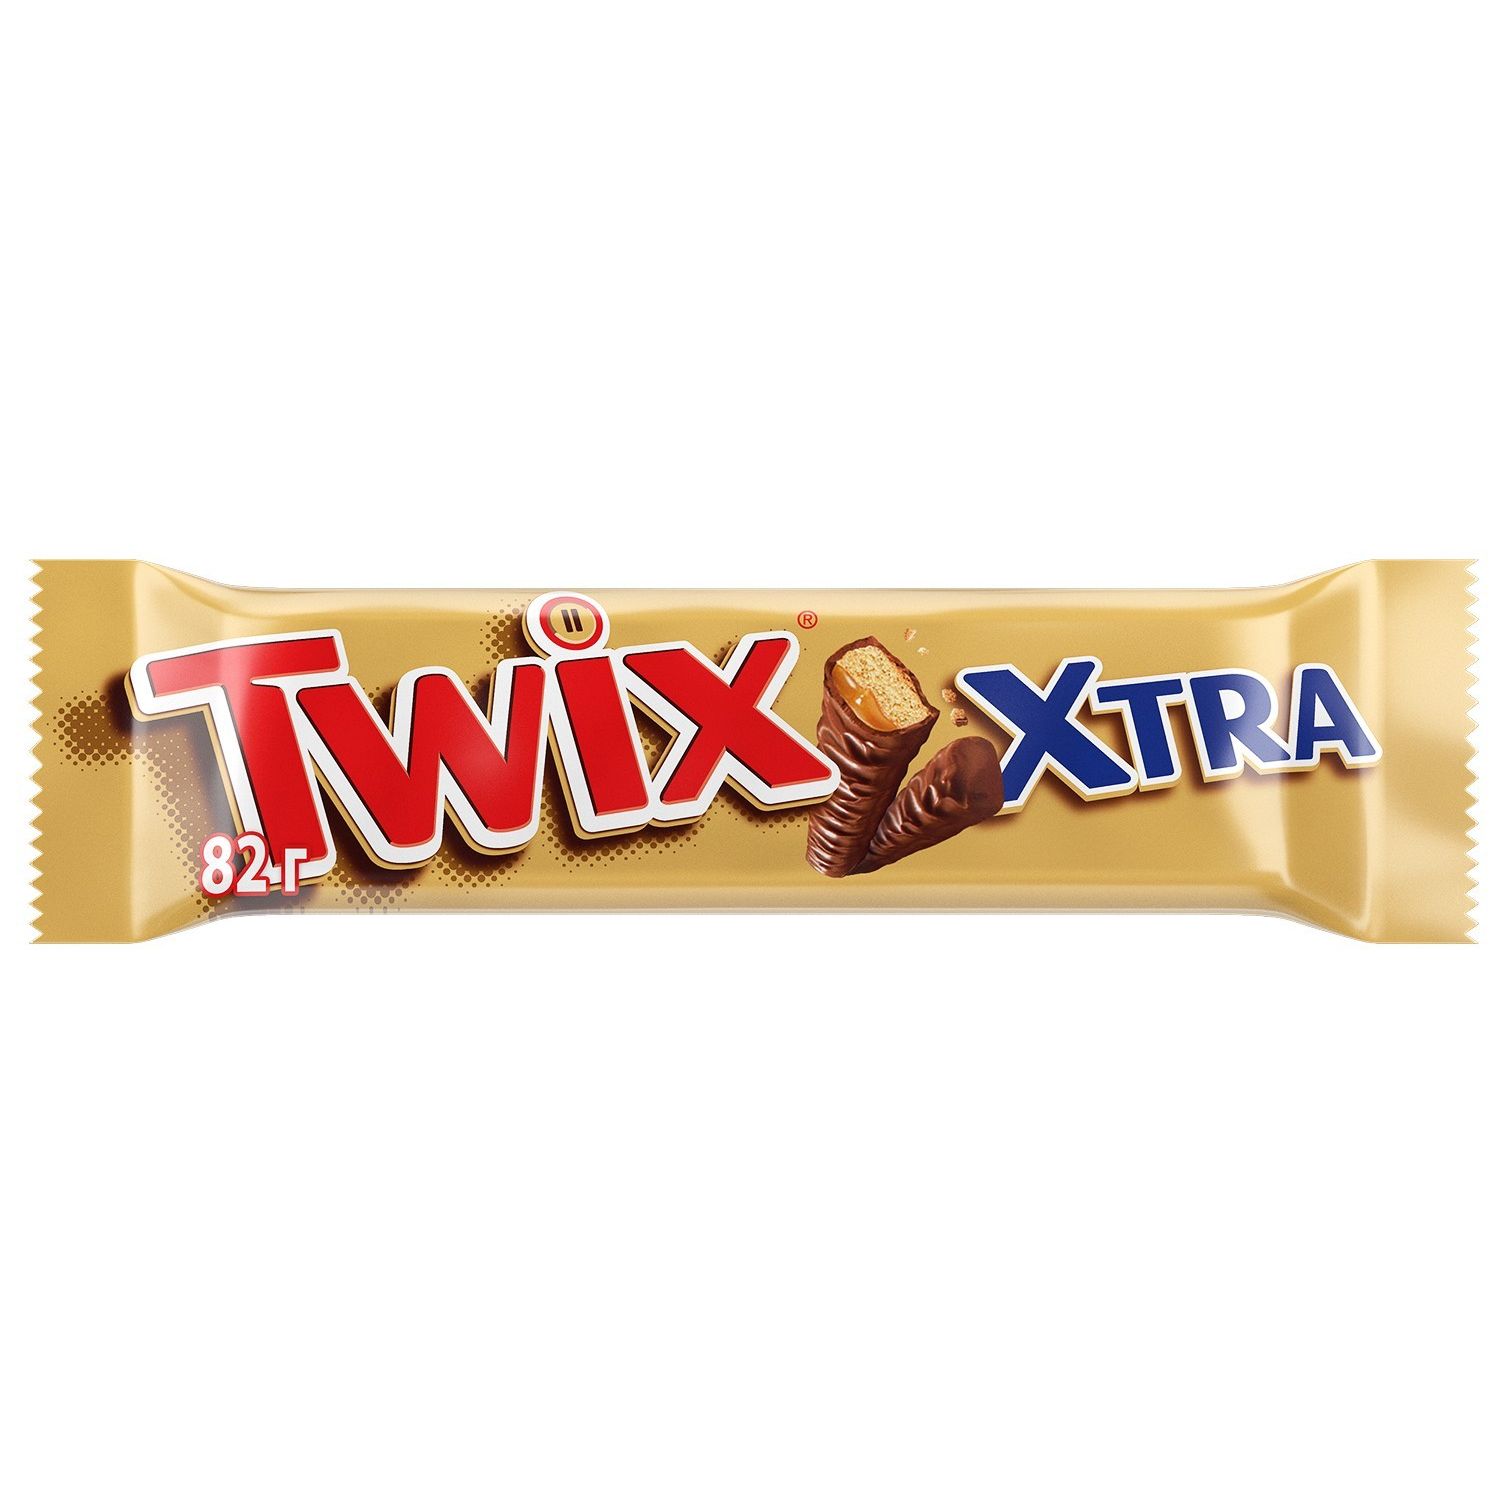 Купить оптом Шоколадный батончик Twix Xtra, 82 г на MAY24